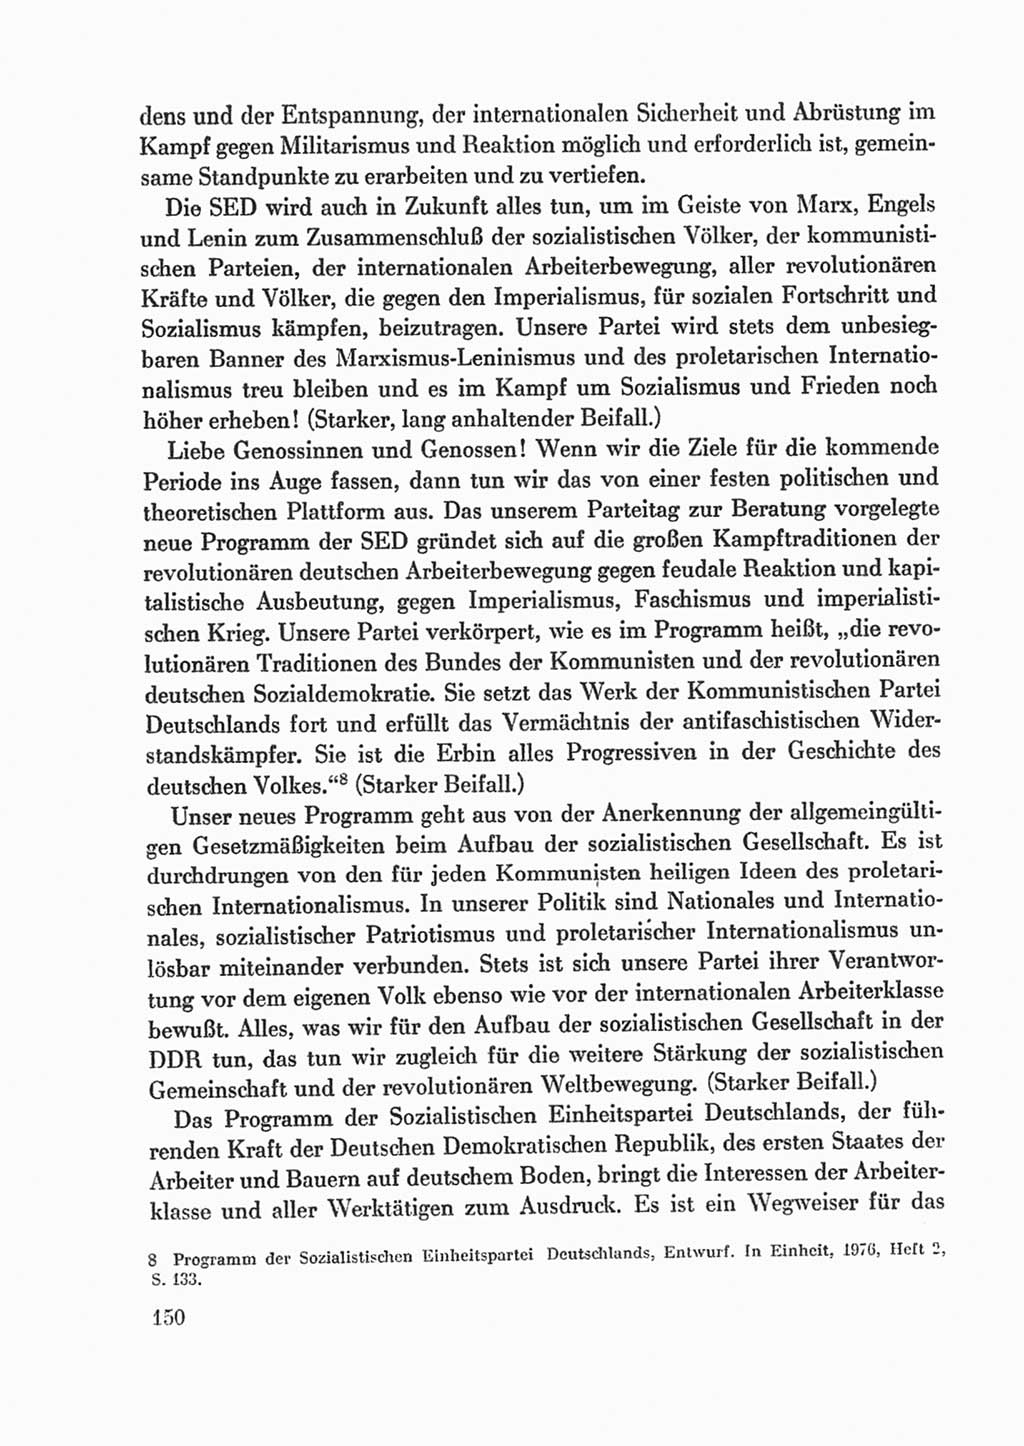 Protokoll der Verhandlungen des Ⅸ. Parteitages der Sozialistischen Einheitspartei Deutschlands (SED) [Deutsche Demokratische Republik (DDR)] 1976, Band 1, Seite 150 (Prot. Verh. Ⅸ. PT SED DDR 1976, Bd. 1, S. 150)